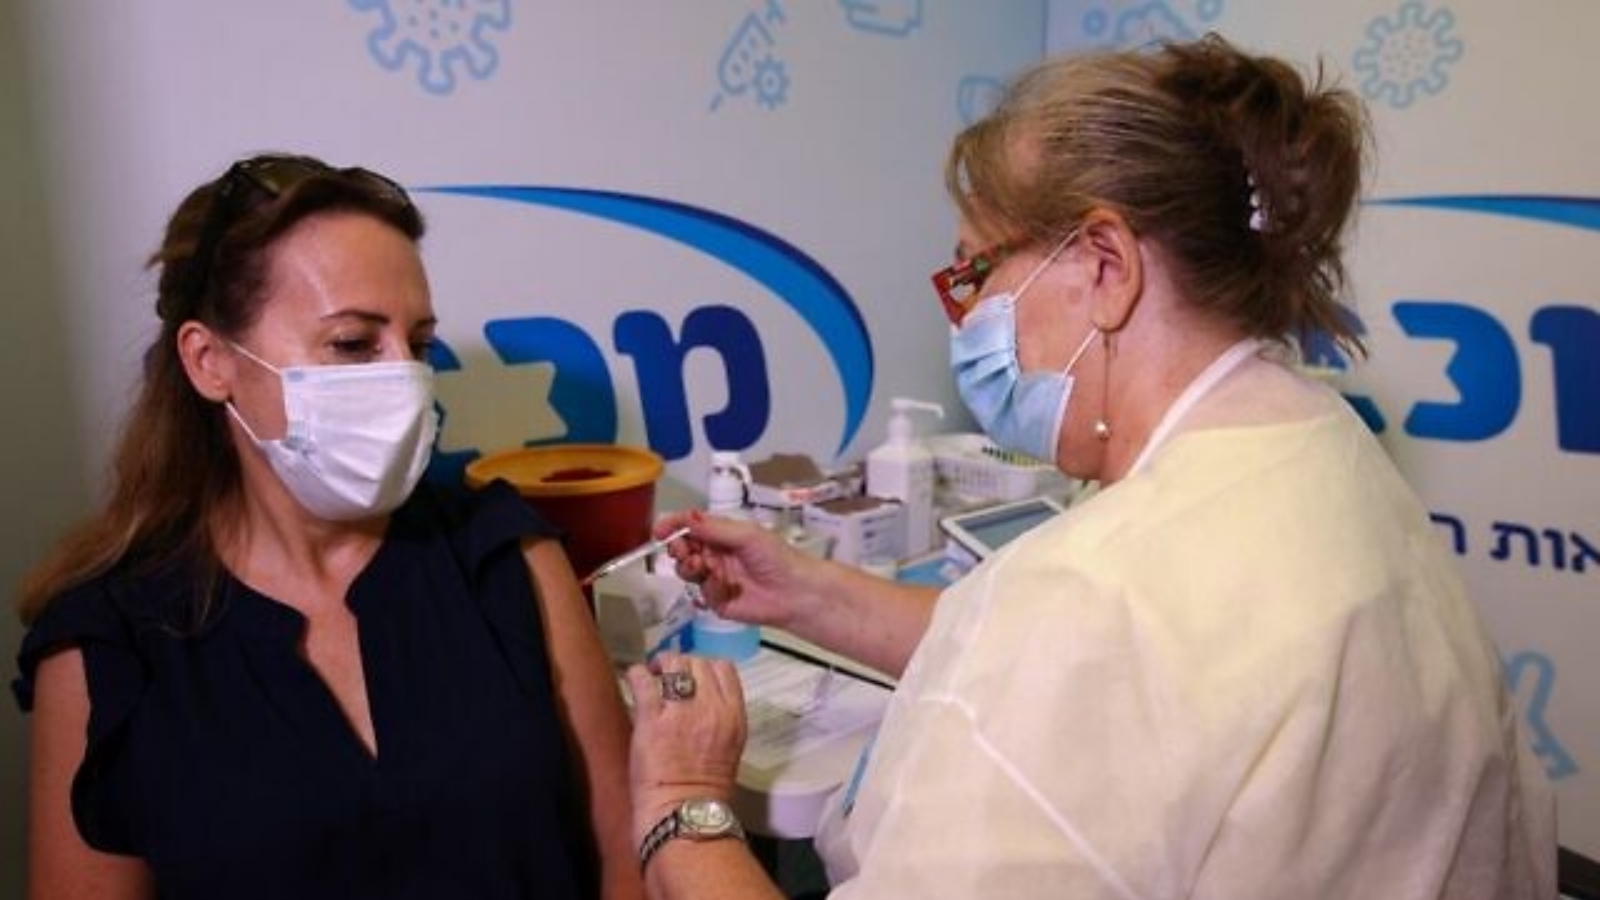 عاملة صحية إسرائيلية تعطي جرعة ثالثة من لقاح فايزر-بيونتيك كوفيد-19 لامرأة، في خدمة مكابي الصحية في بلدة ريشون لتسيون الإسرائيلية. بتاريخ 13 آب/أغسطس، 2021